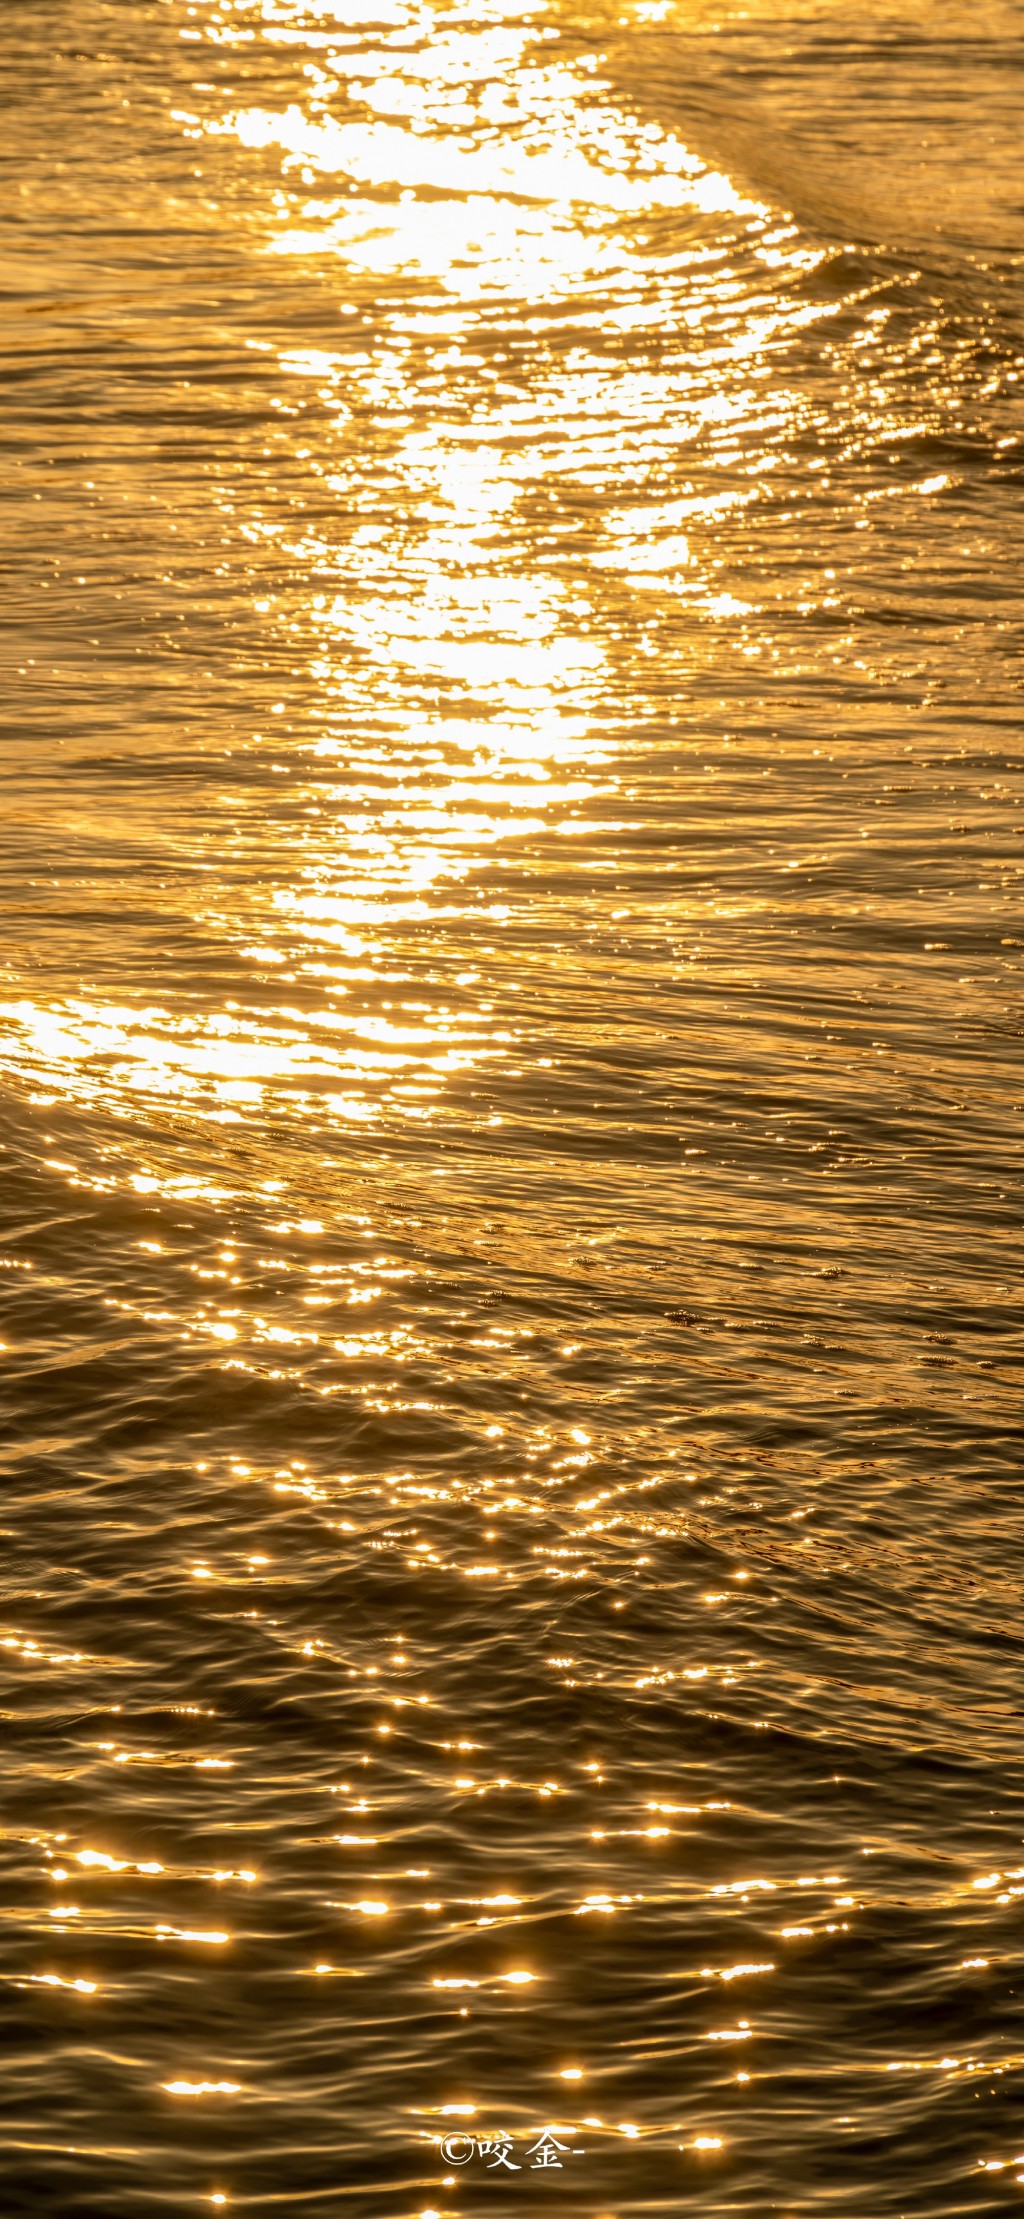 日落黄昏海边金光风景手机壁纸